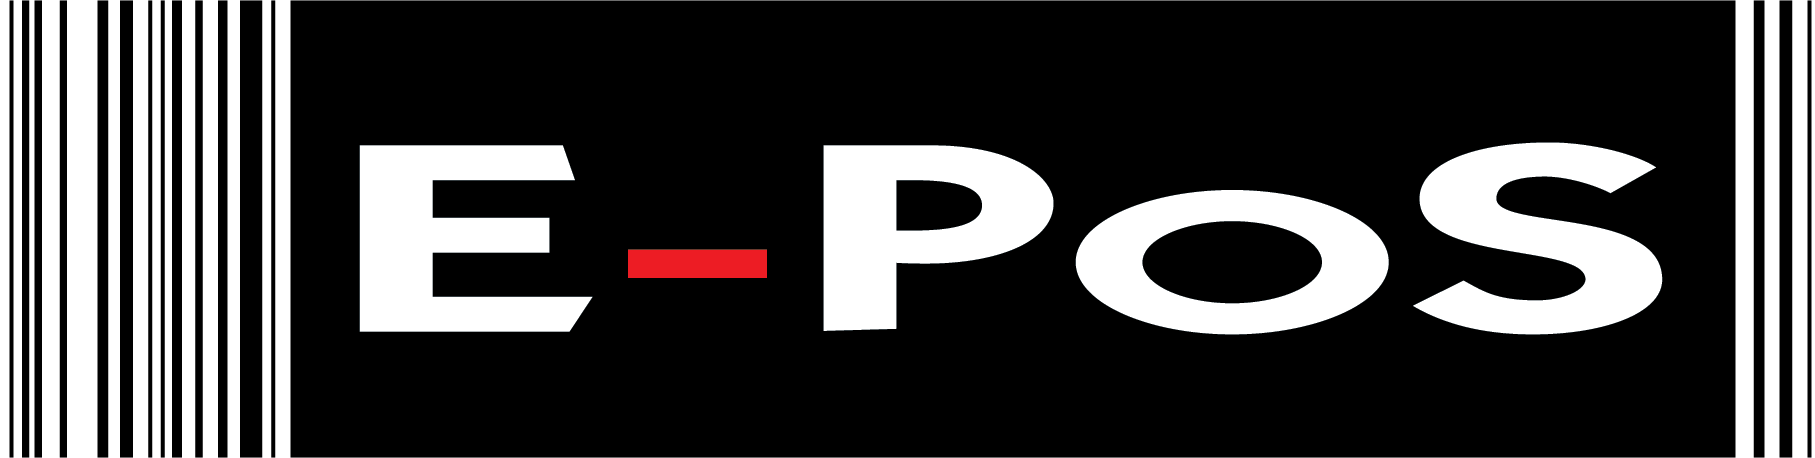 E-PoS logo